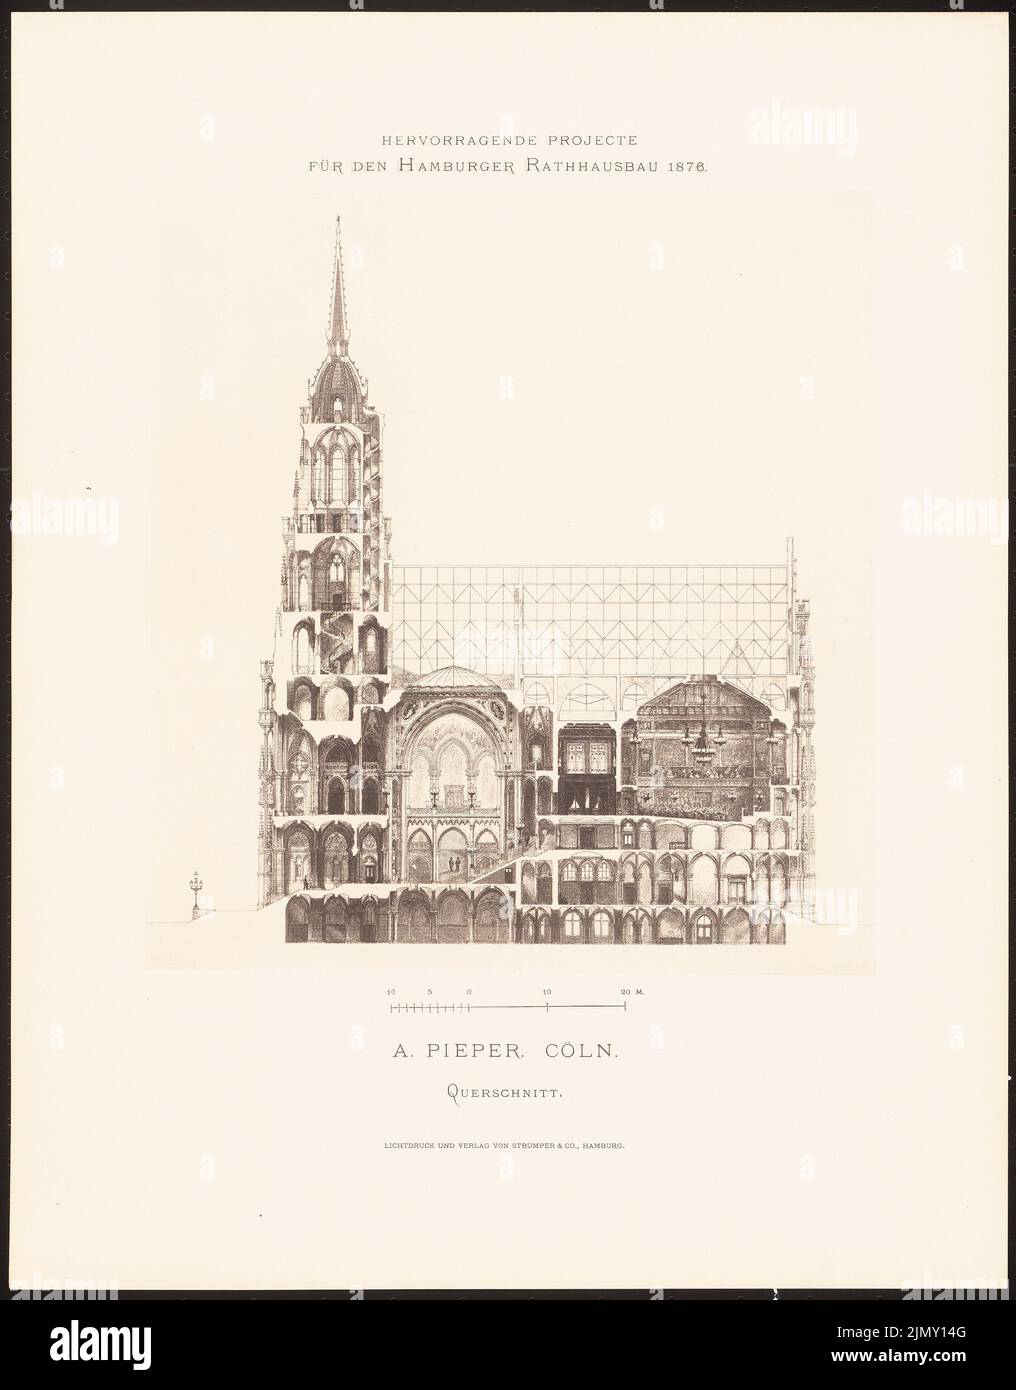 Pieper A., eccellenti progetti per la costruzione del municipio di Amburgo nel 1876 (1876-1876): Sezione trasversale. Leggera pressione sulla carta, 45,1 x 35,3 cm (inclusi i bordi di scansione) Foto Stock